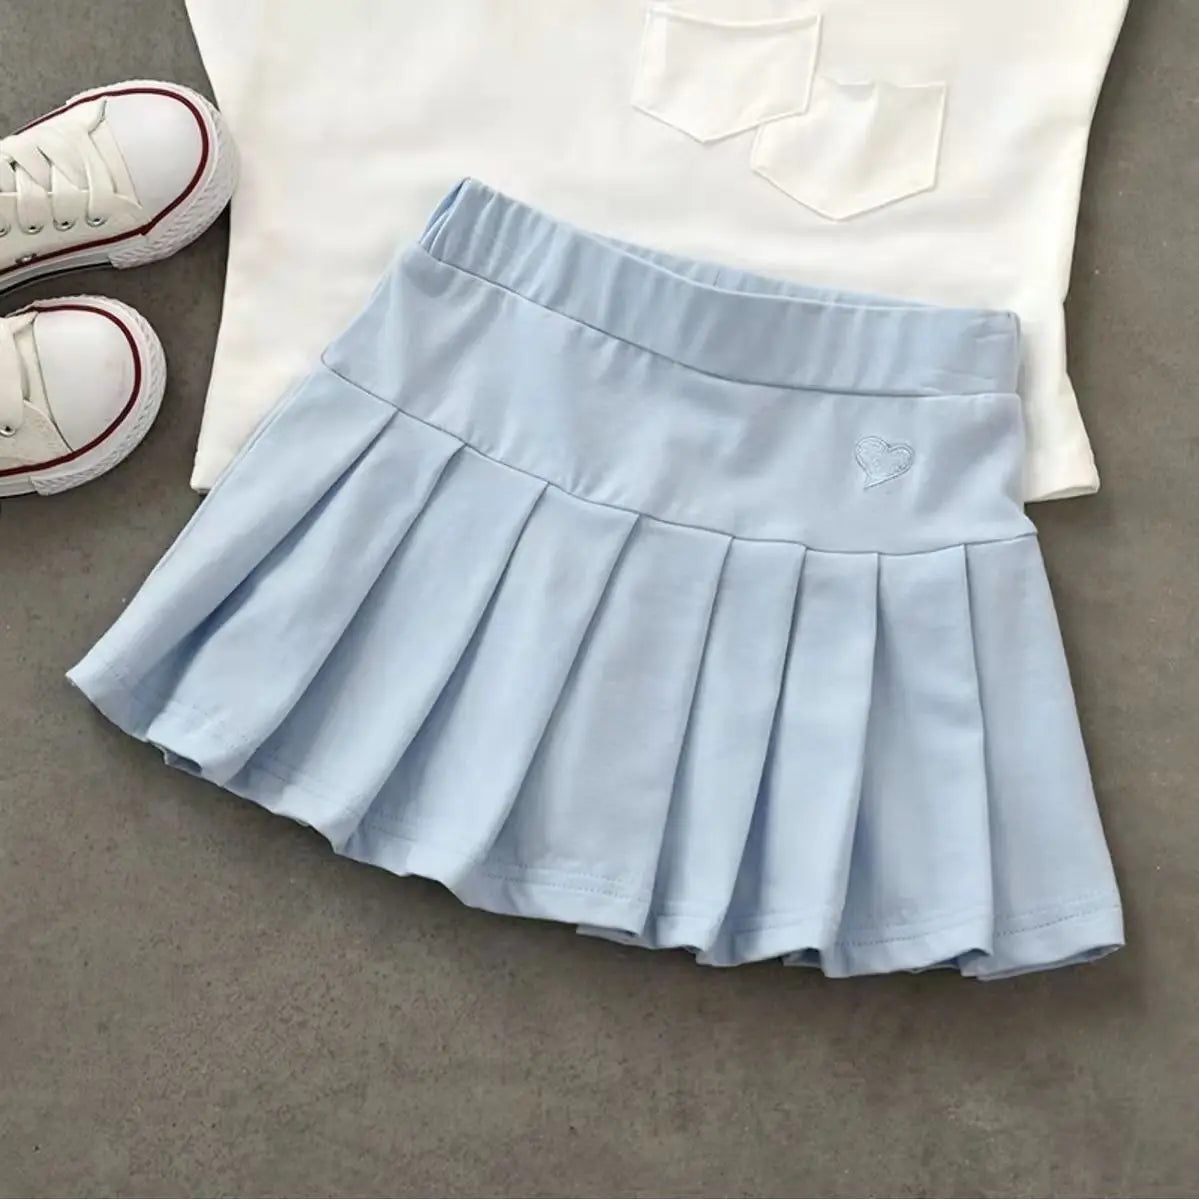 Balletcore Kawaii Aesthetic Heart Embroidery Elastic Waist Tennis Skirt - Blue / S - Bottoms - Skirts - 8 - 2024